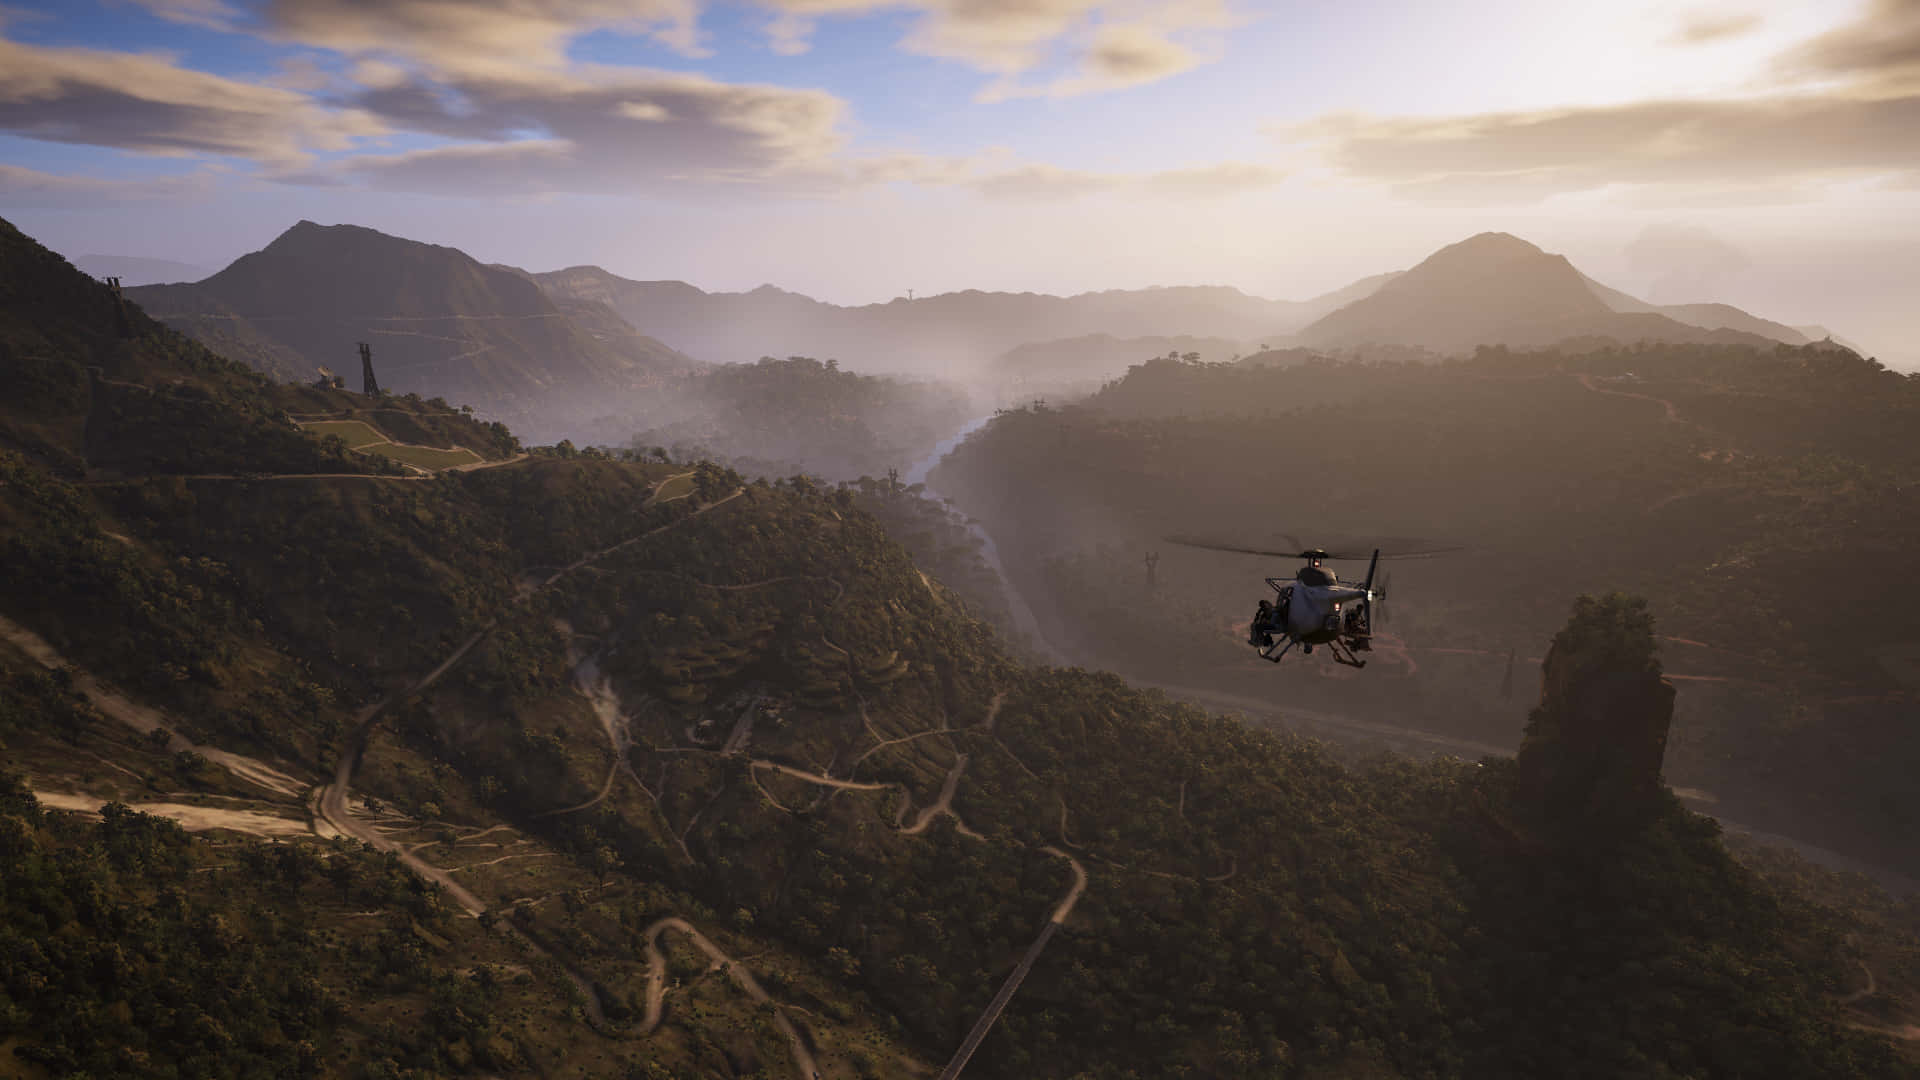 Fondode Pantalla De Ghost Recon Wildlands En Hd, Con Un Helicóptero Volando Alrededor De Las Montañas.